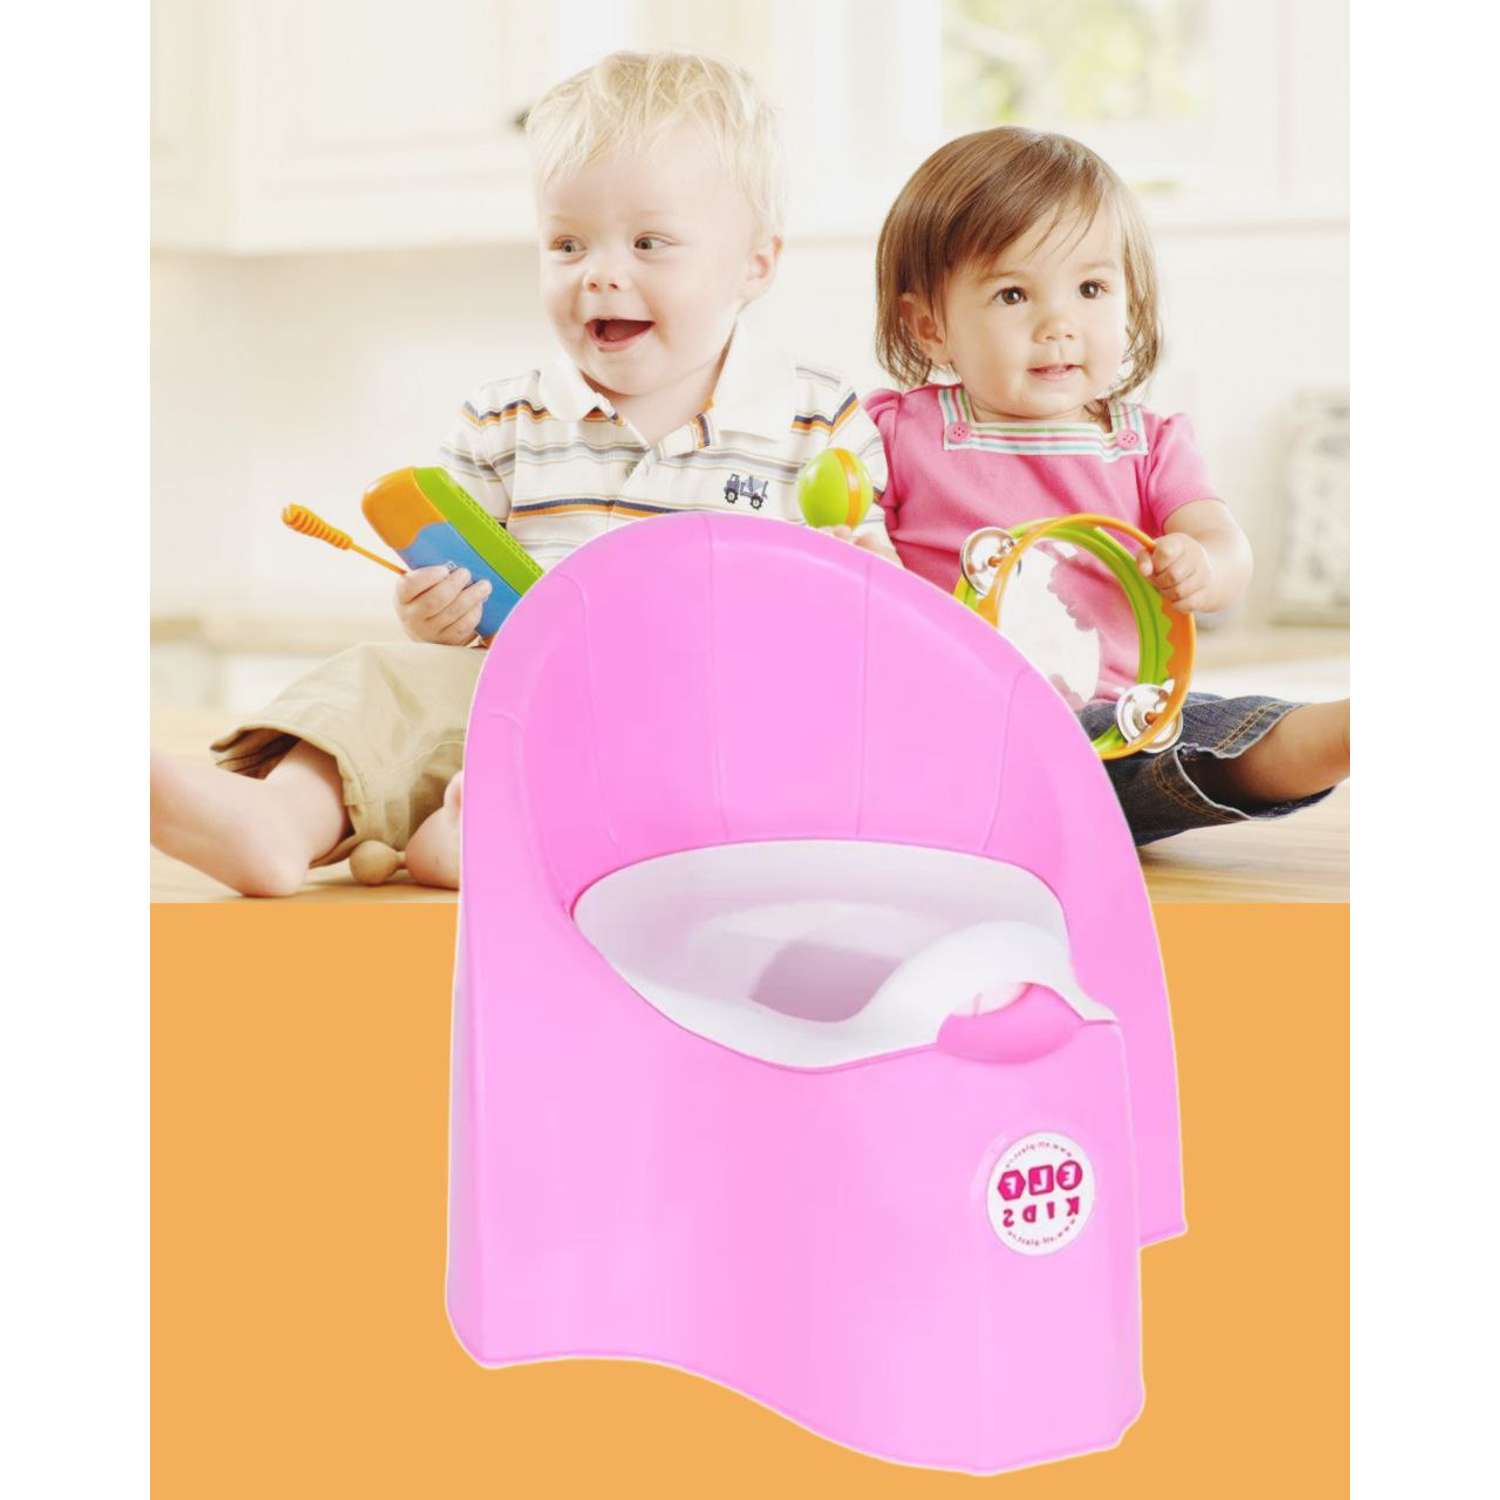 Горшок детский пластиковый elfplast со съемной емкостью цвет-розовый. - фото 2